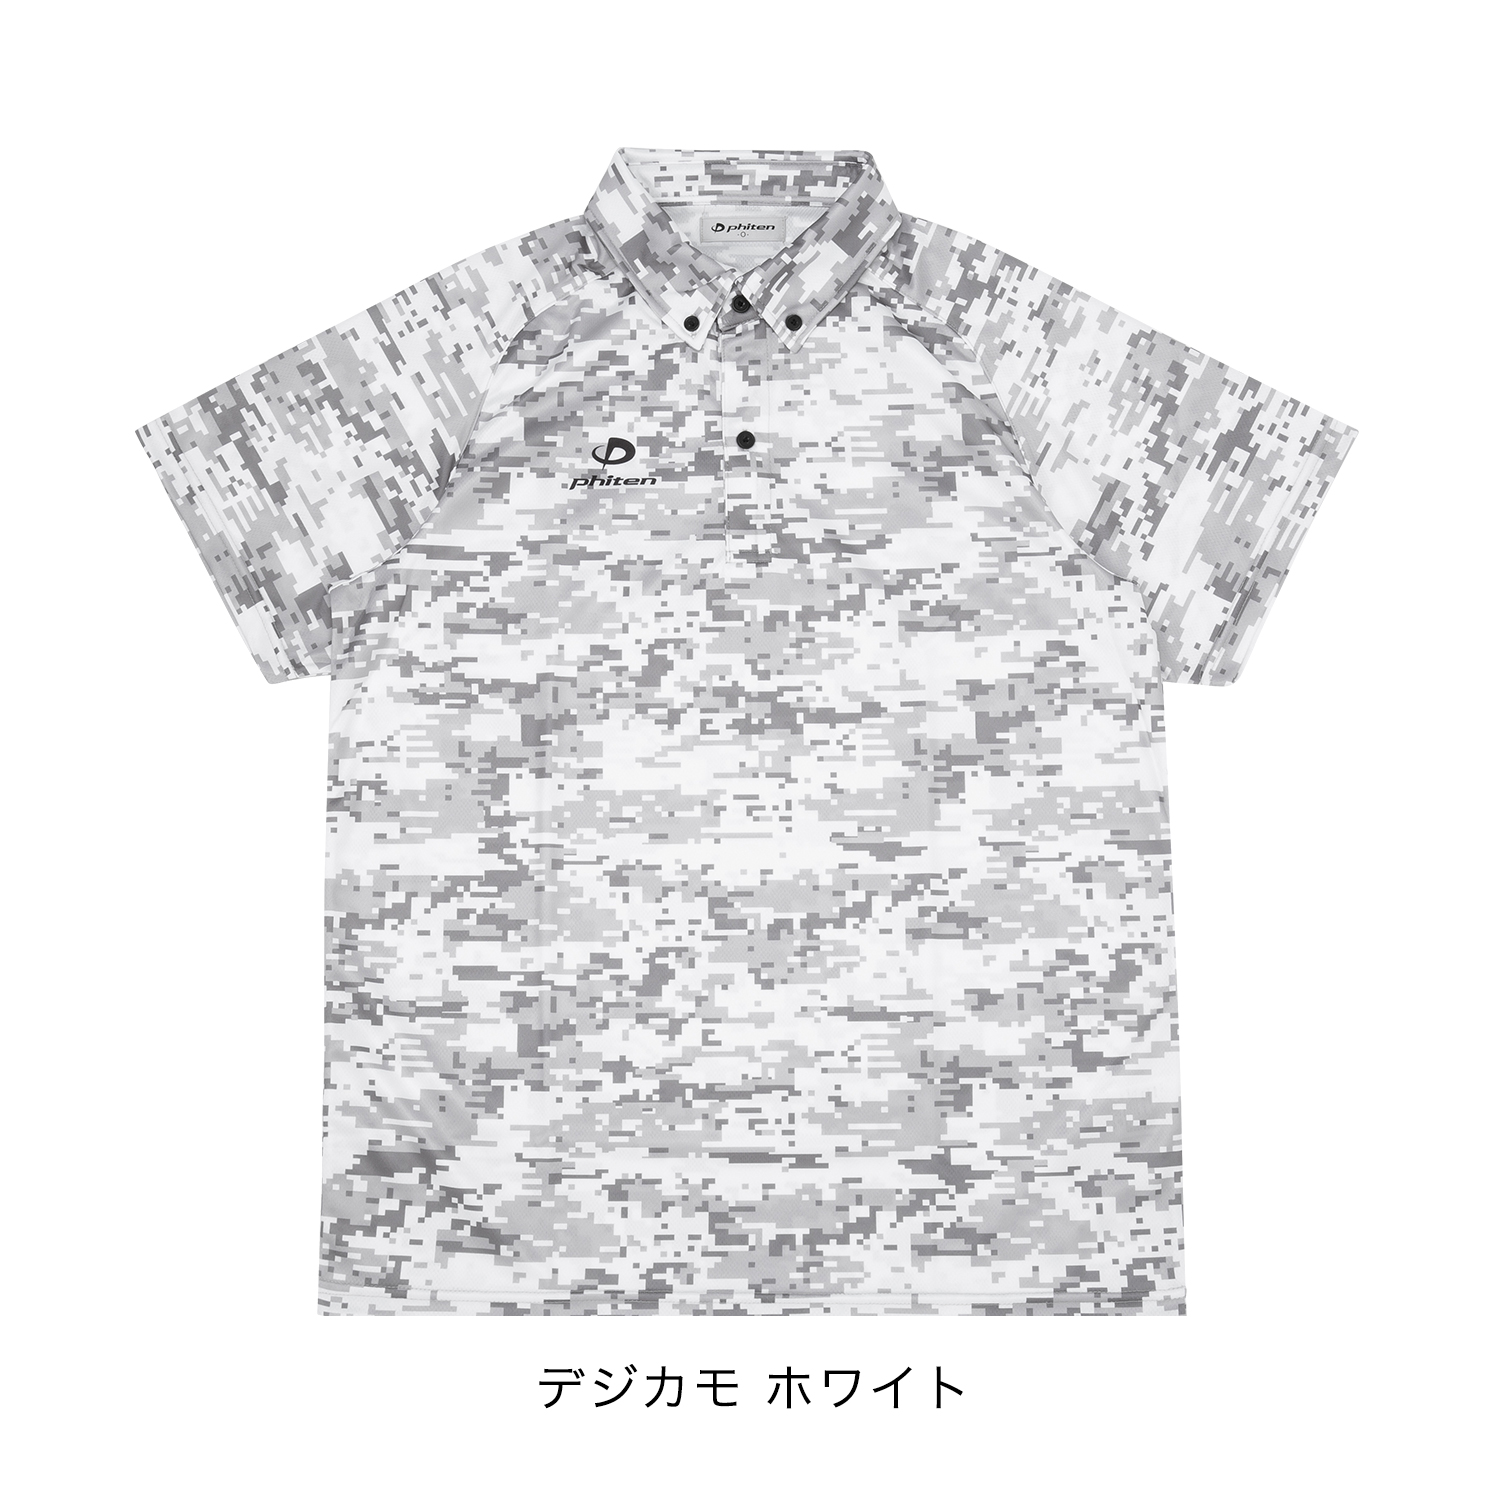 ポロシャツ(ライト)デジカモ | ファイテン公式通販サイト【ファイテン